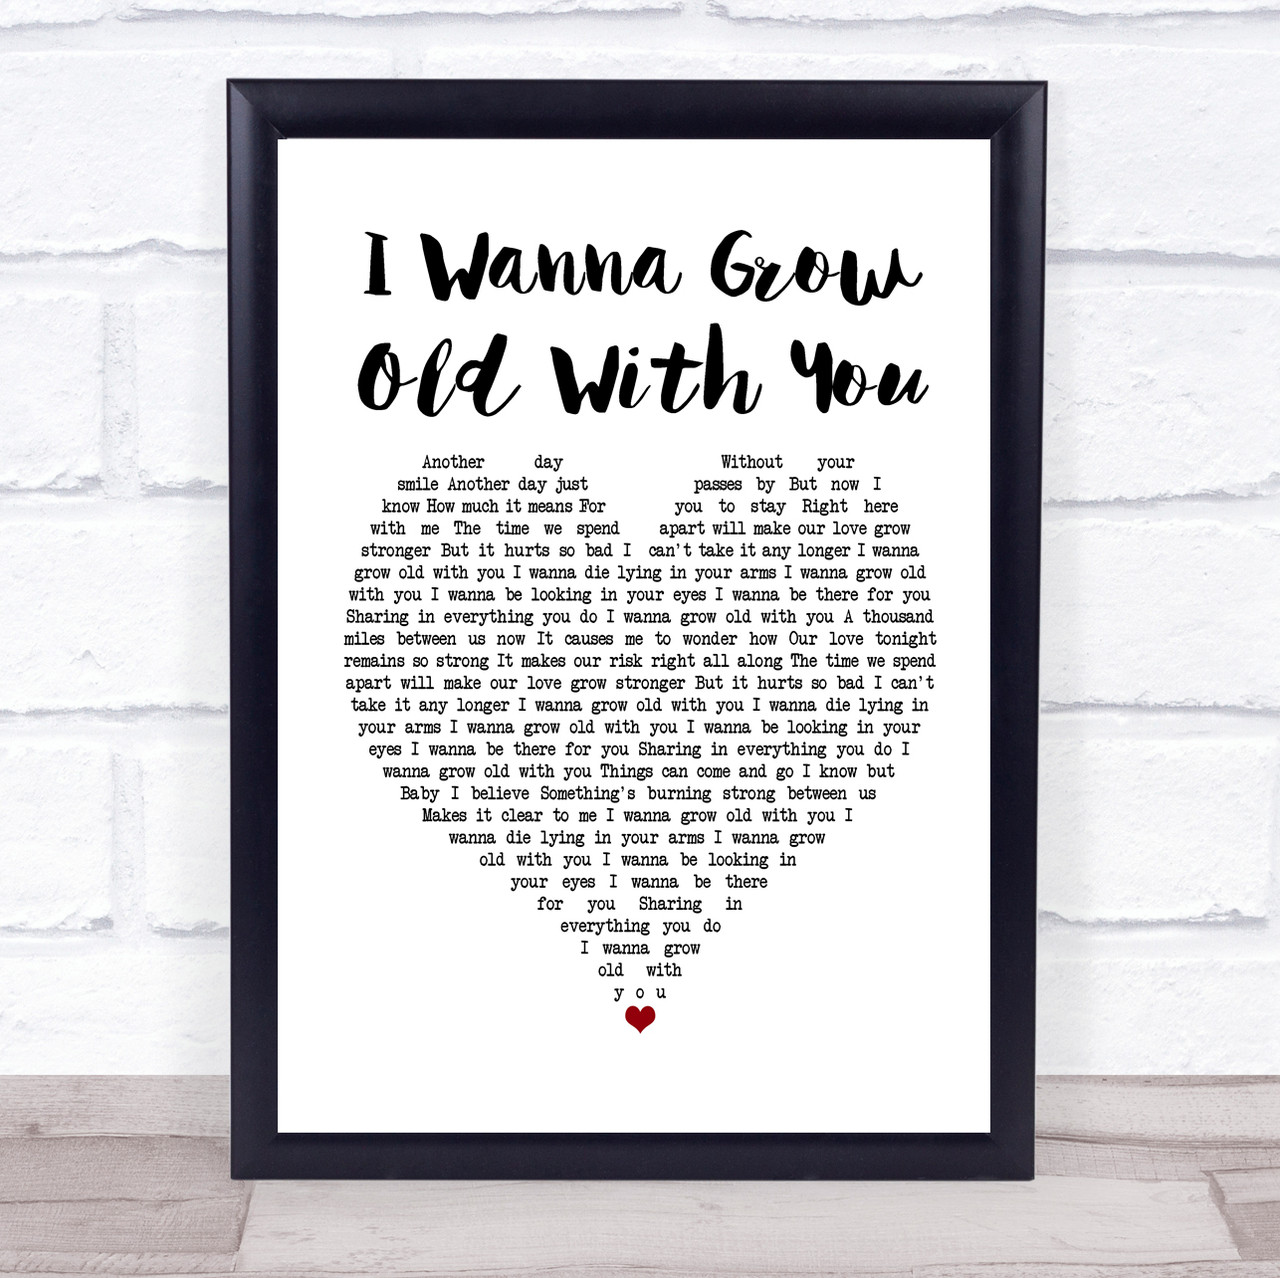 Westlife - I Wanna Grow Old With You (tradução) 